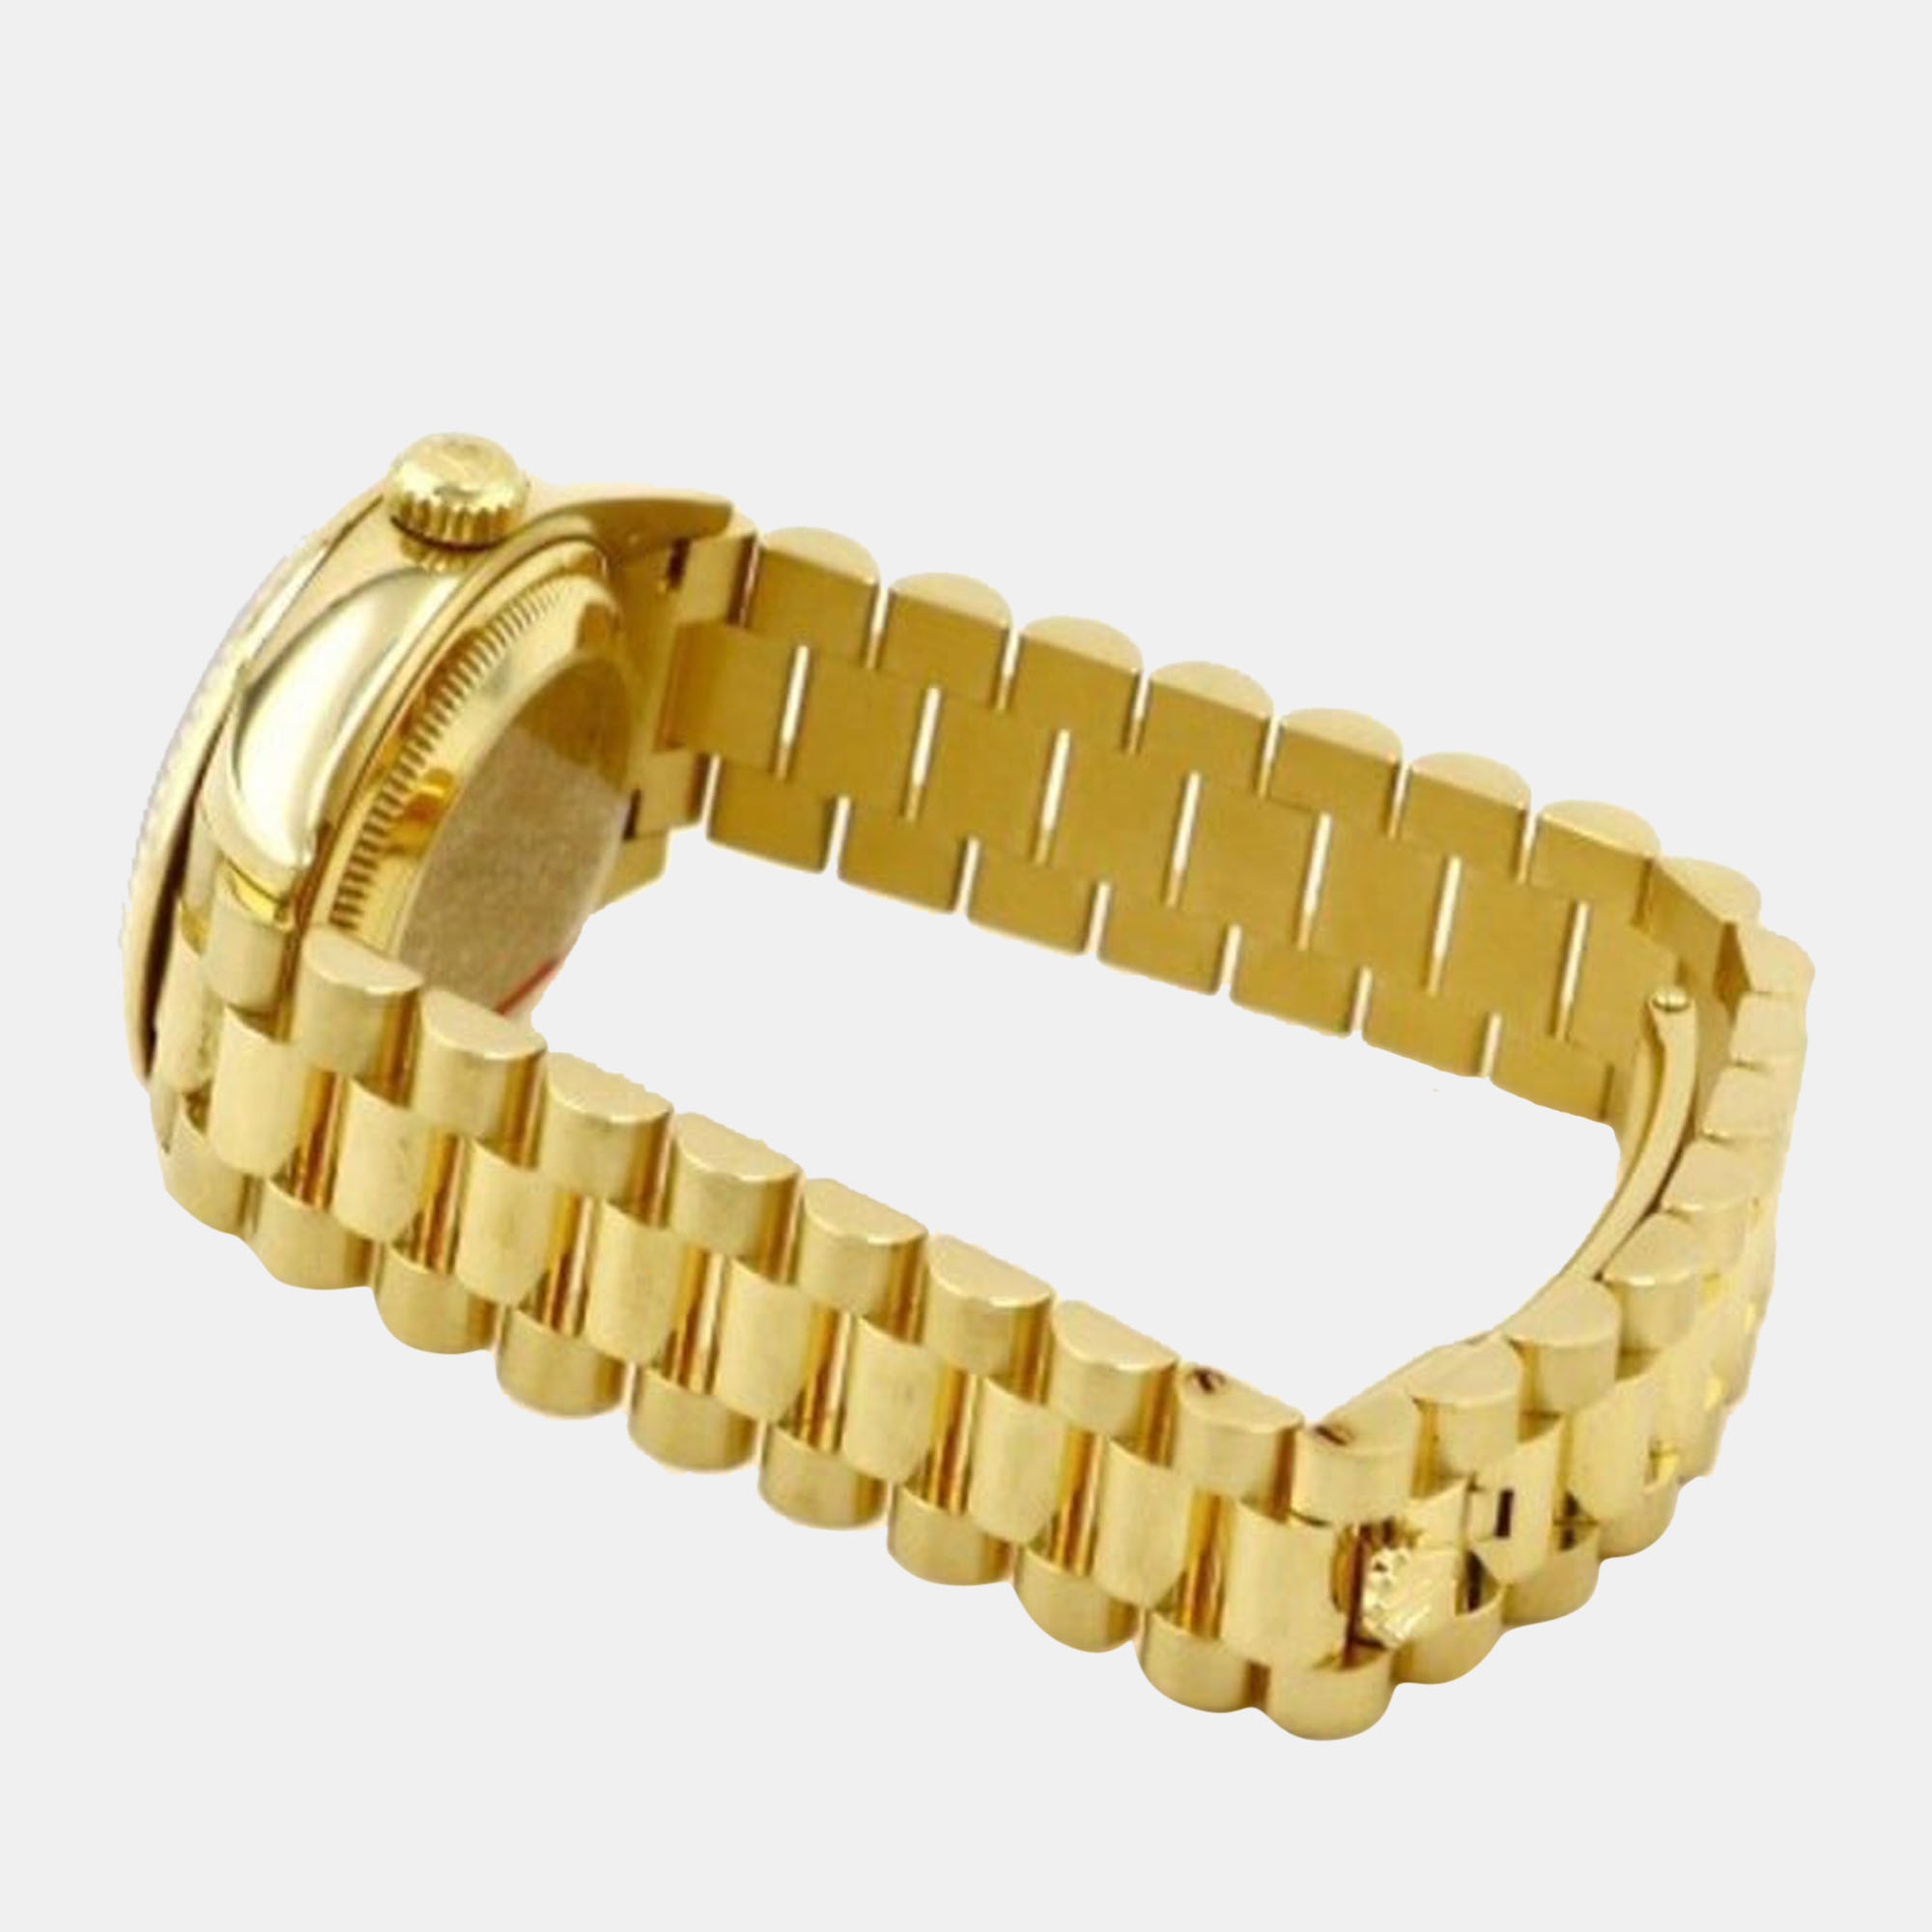 Rolex Champagne Diamond 18k Yellow Gold Datejust 279178 Automatic Women's Wristwatch 28 Mm